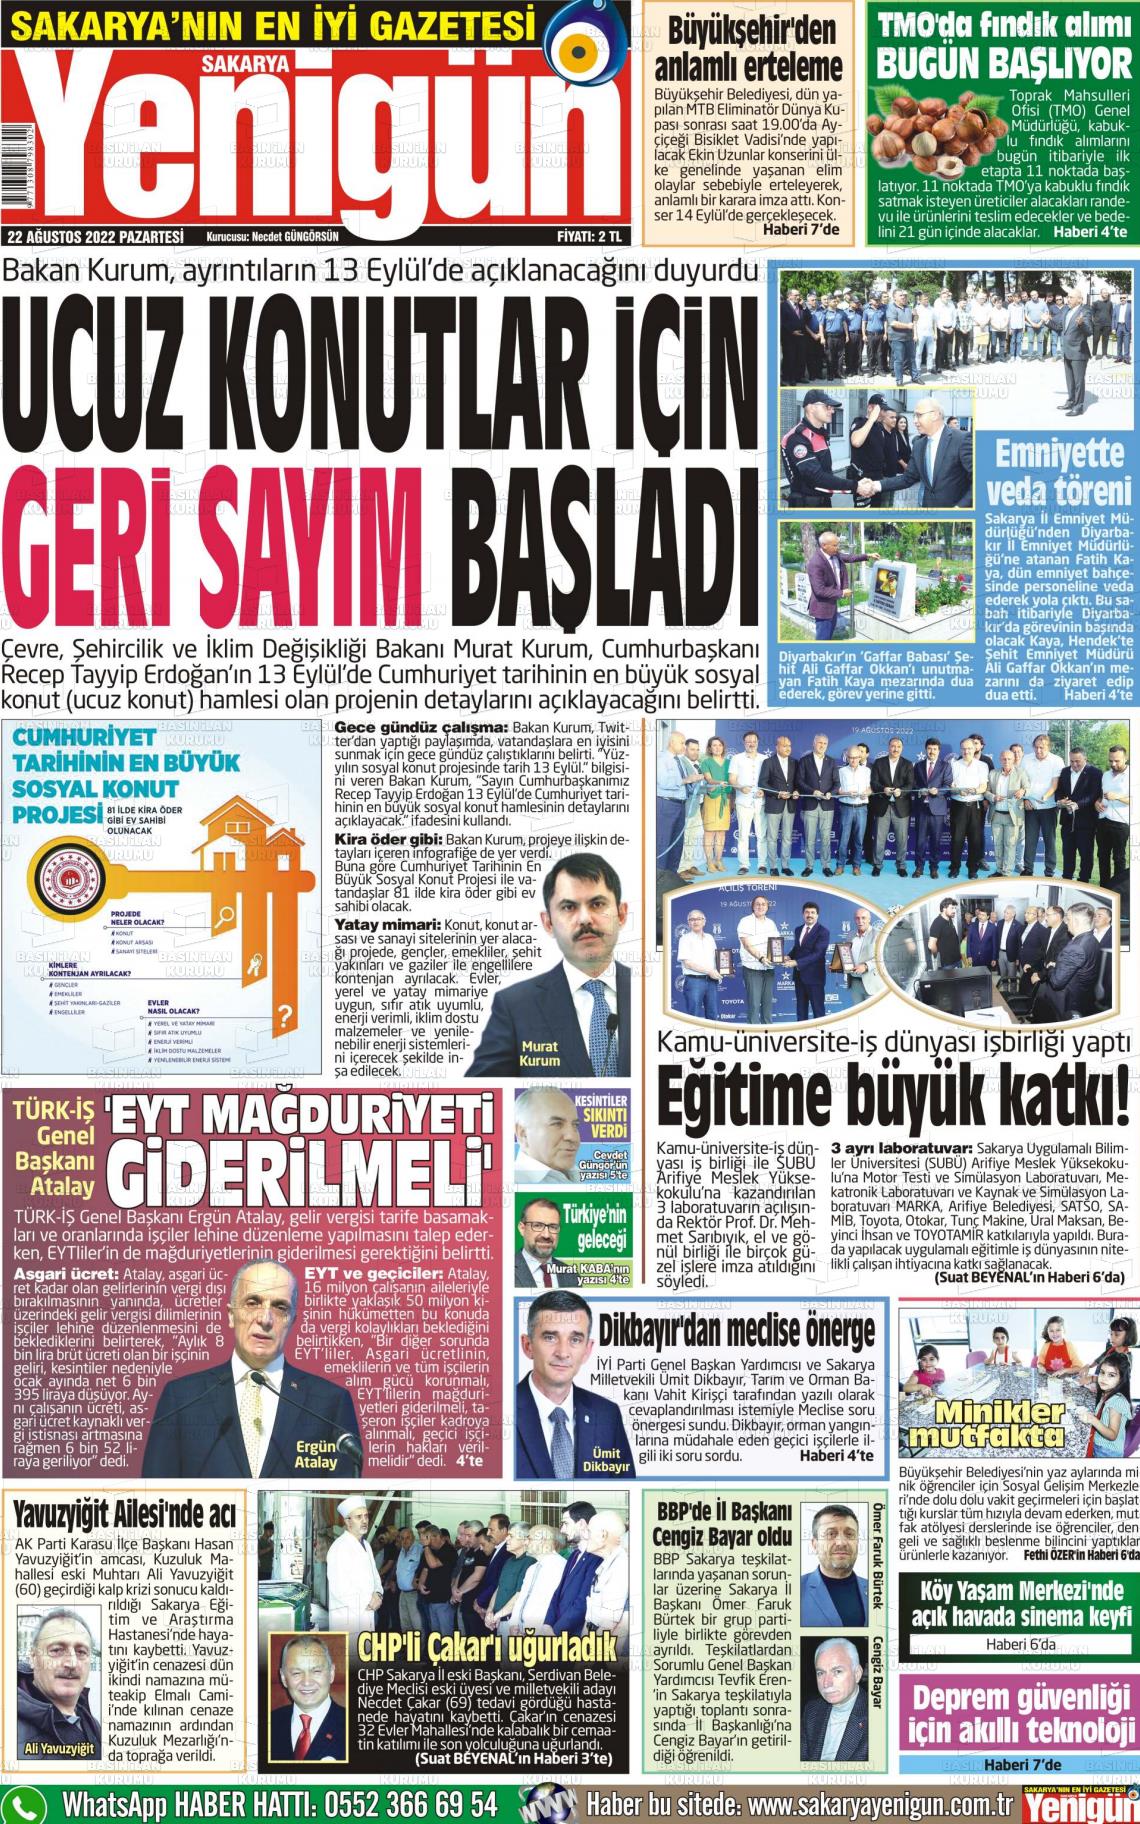 22 Ağustos 2022 Sakarya Yenigün Gazete Manşeti